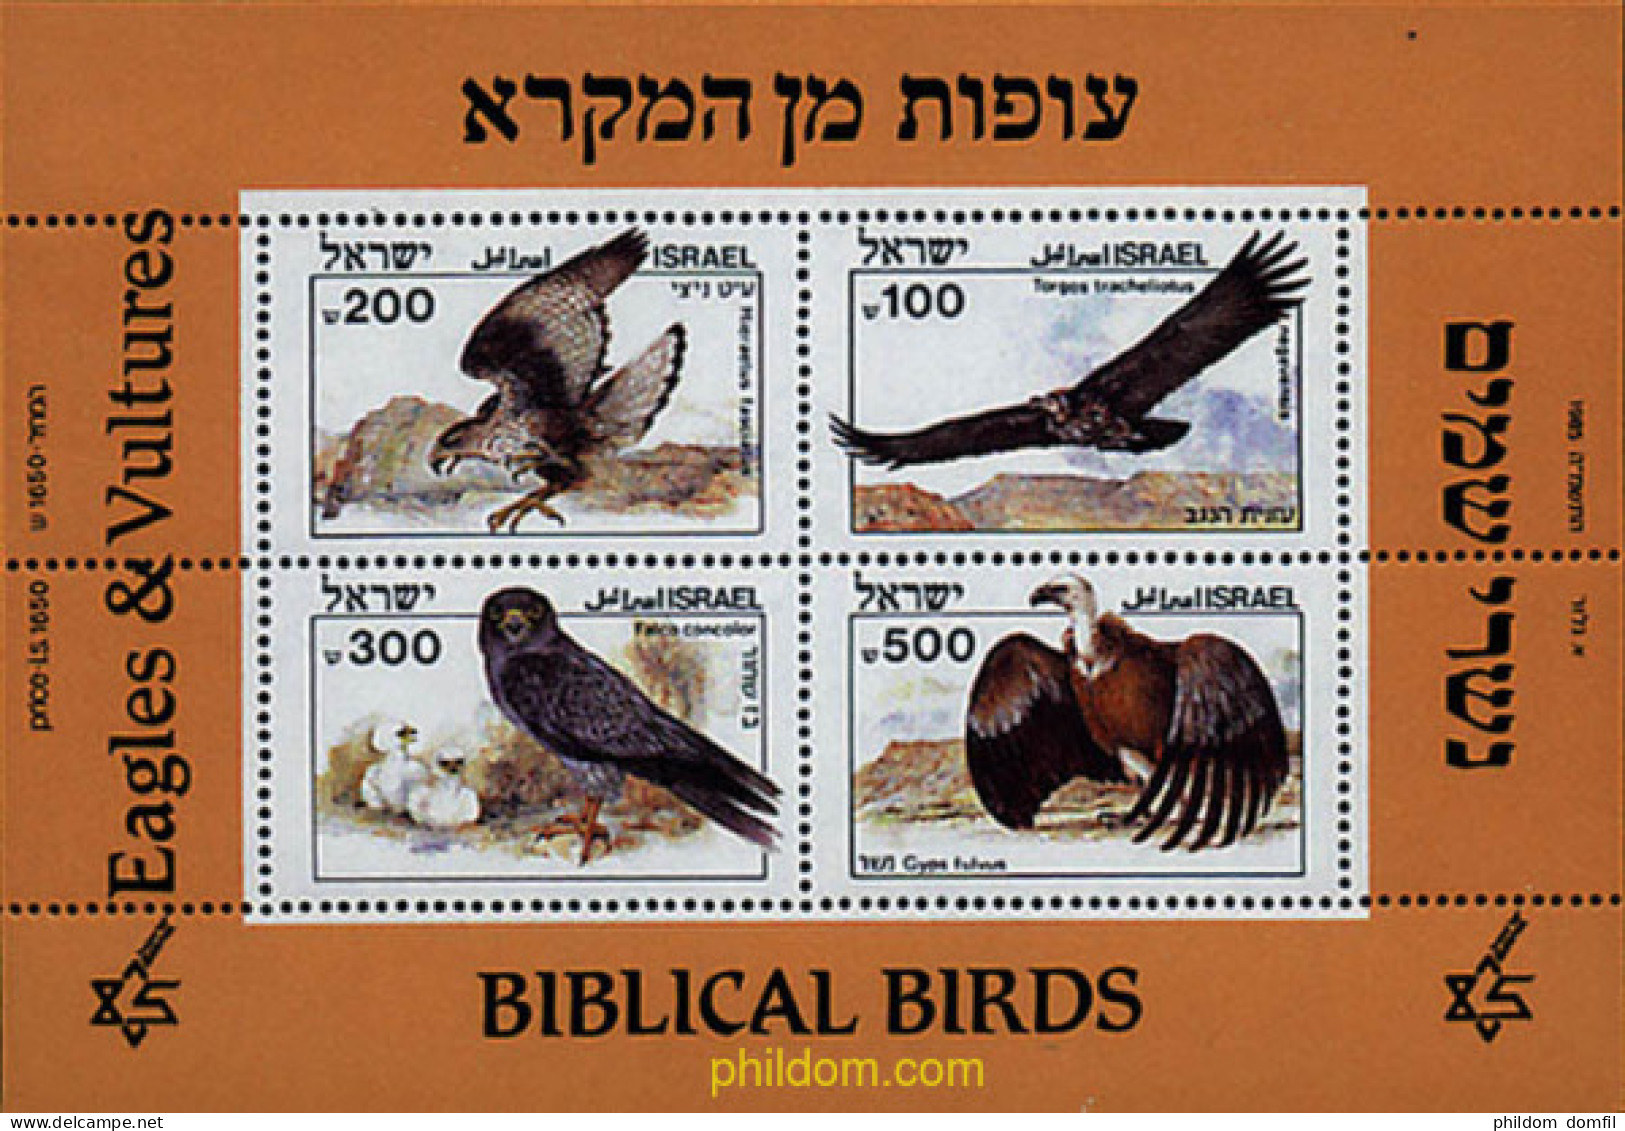 31508 MNH ISRAEL 1985 AVES DE LA BIBLIA - Nuevos (sin Tab)